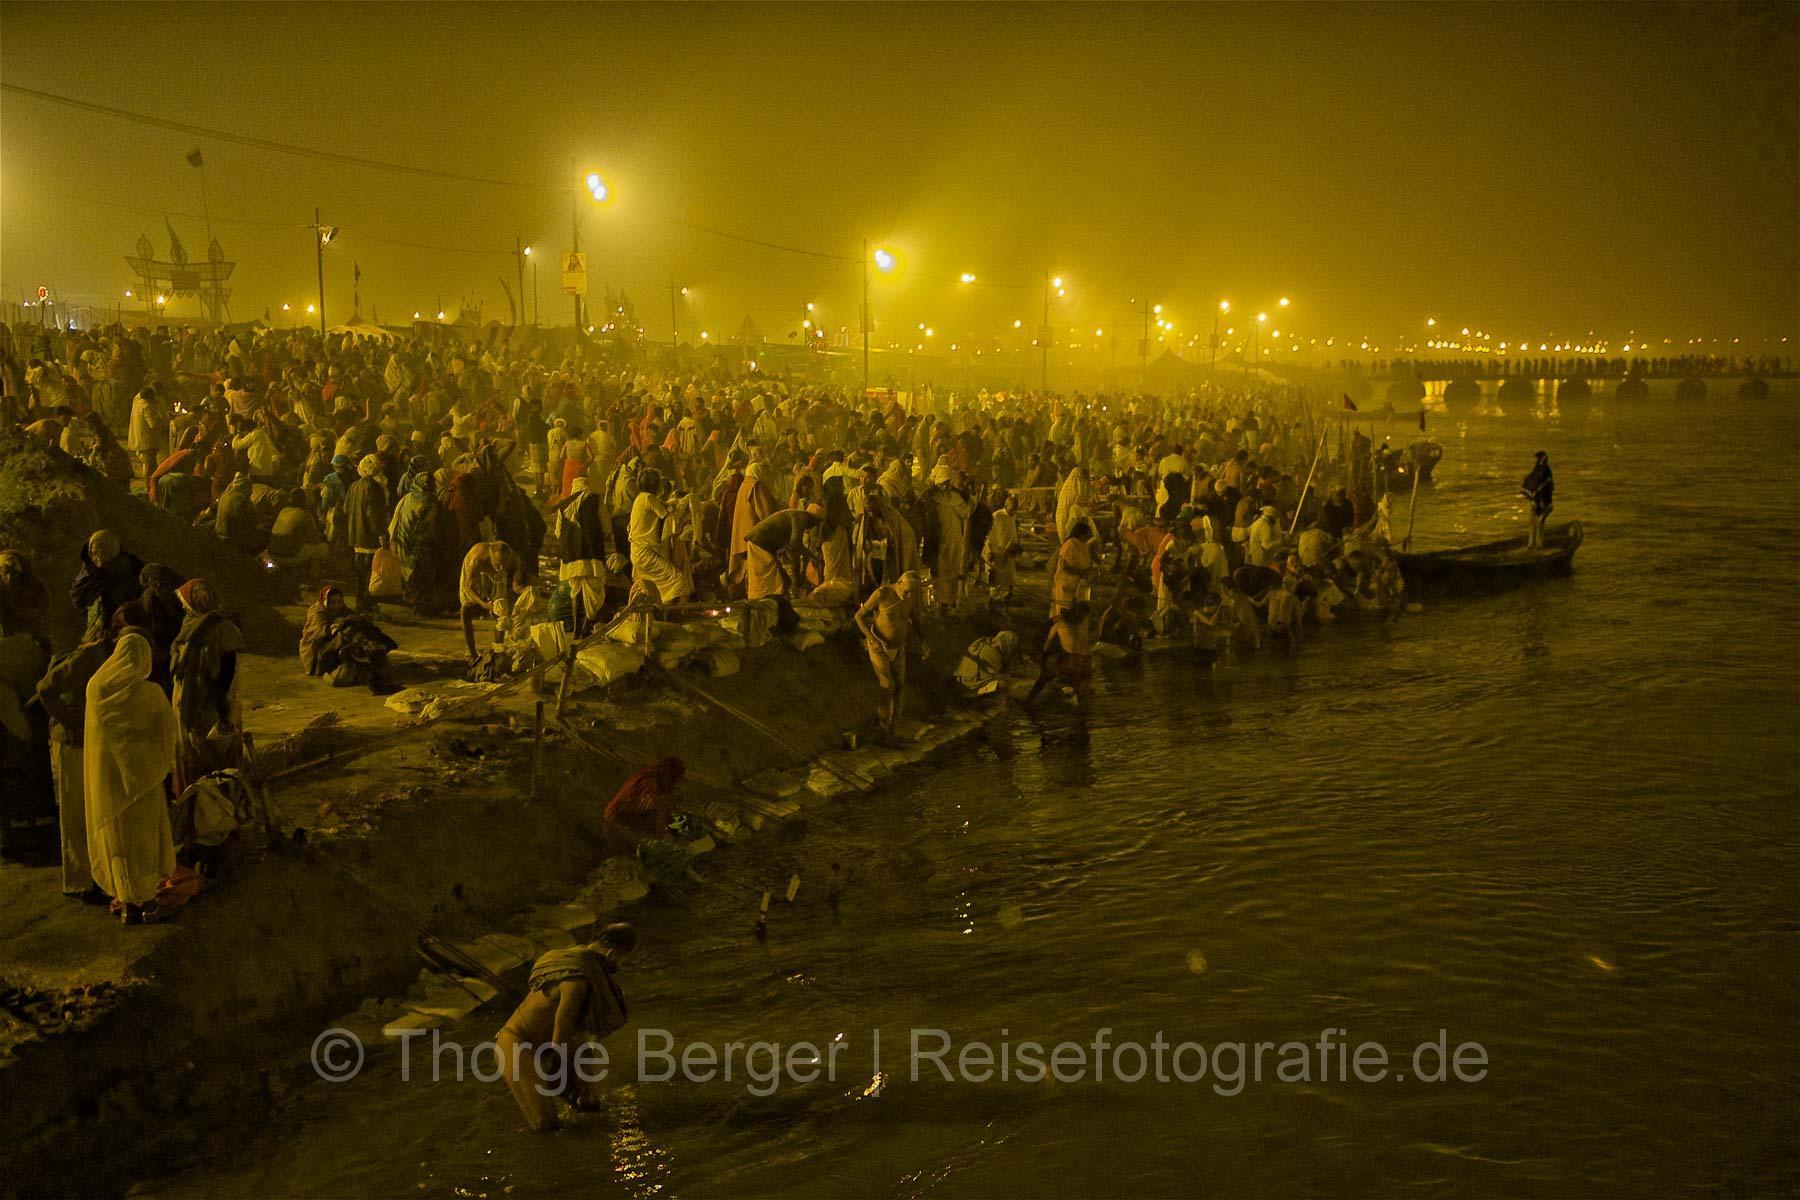 Menschenmassen am Ganges - Kumbh Mela 2013 in Allhabad